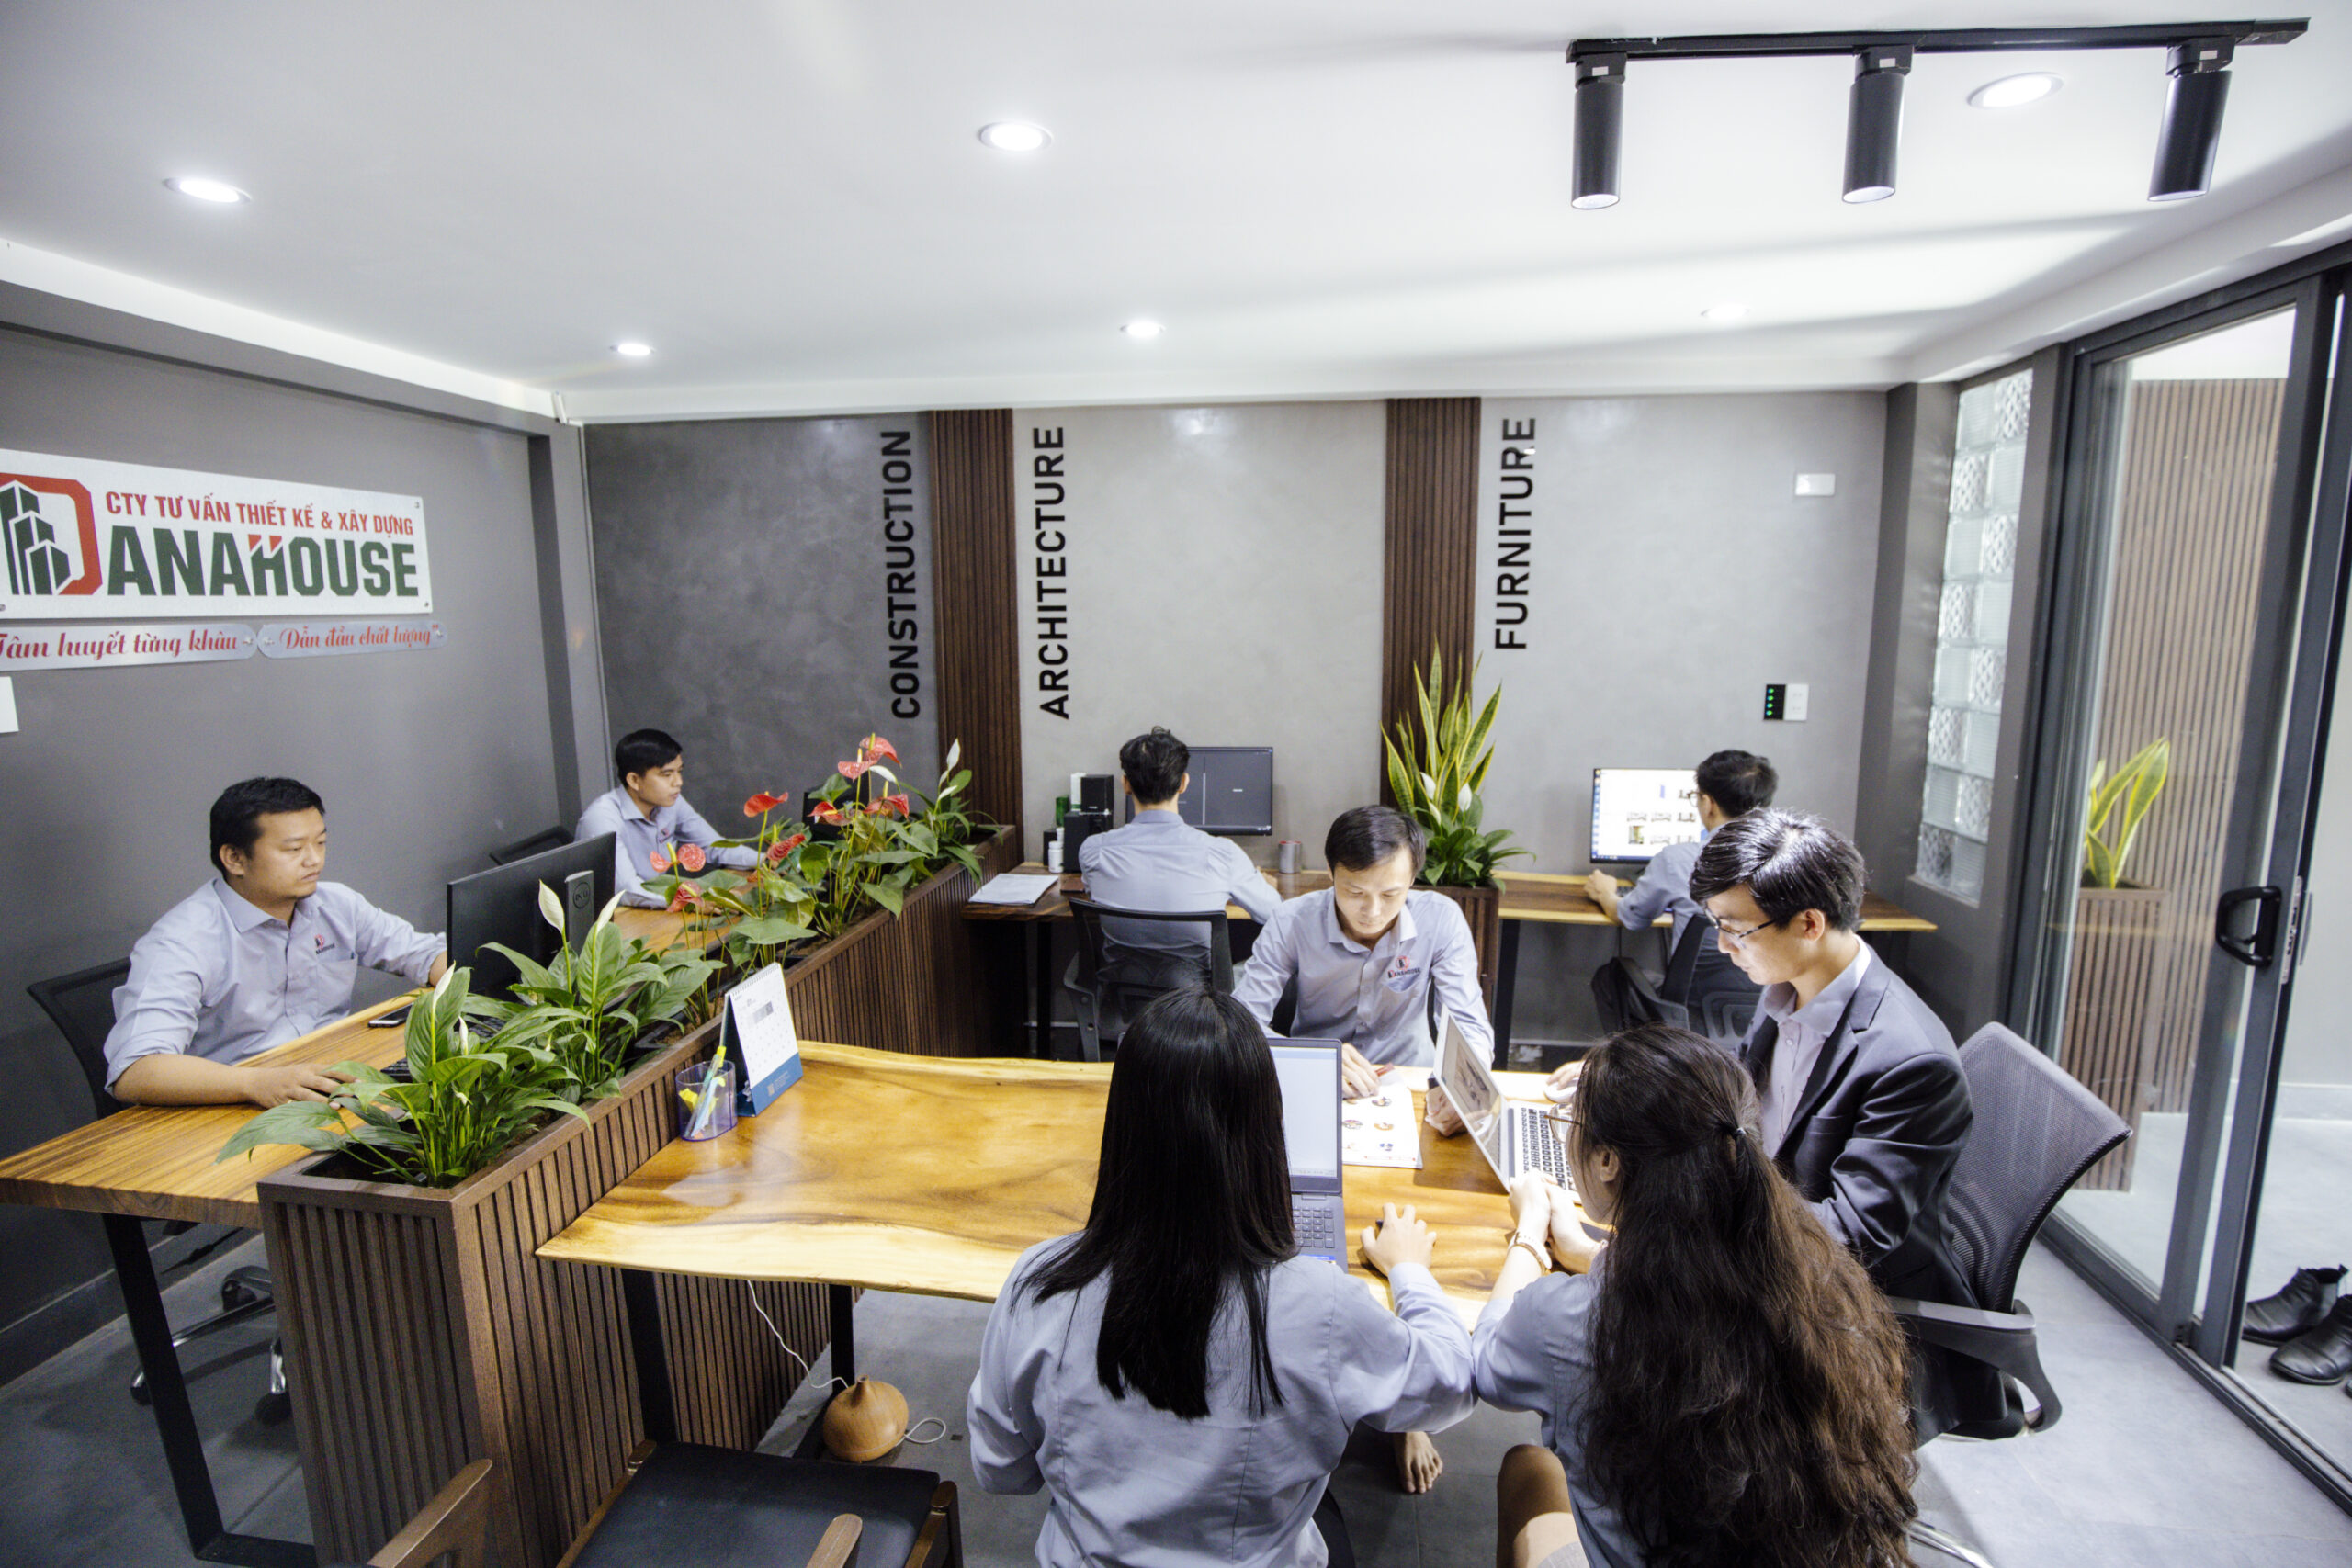 Công ty Danahouse đã thực hiện hàng nghìn dự án thiết kế kiến trúc nhà ở cho khách hàng Đà Nẵng